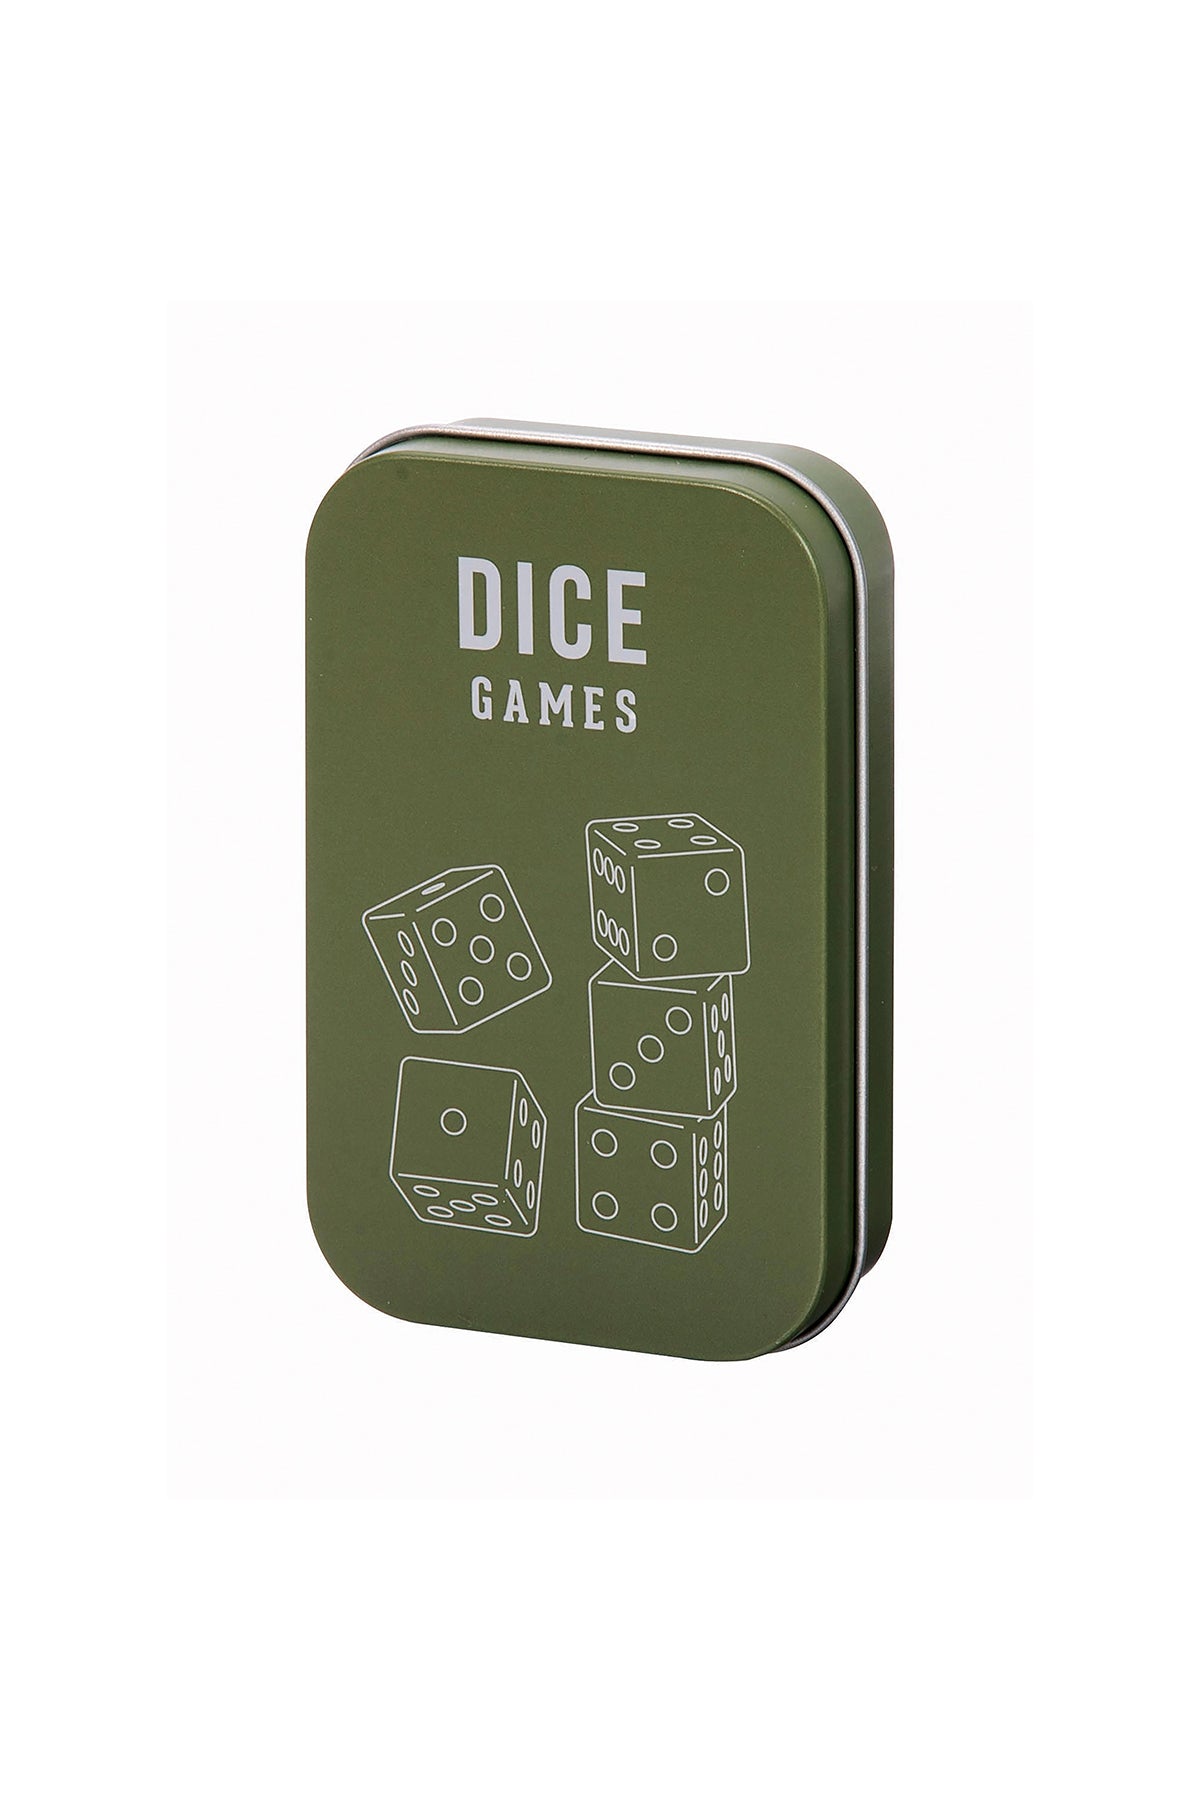 Dice Games